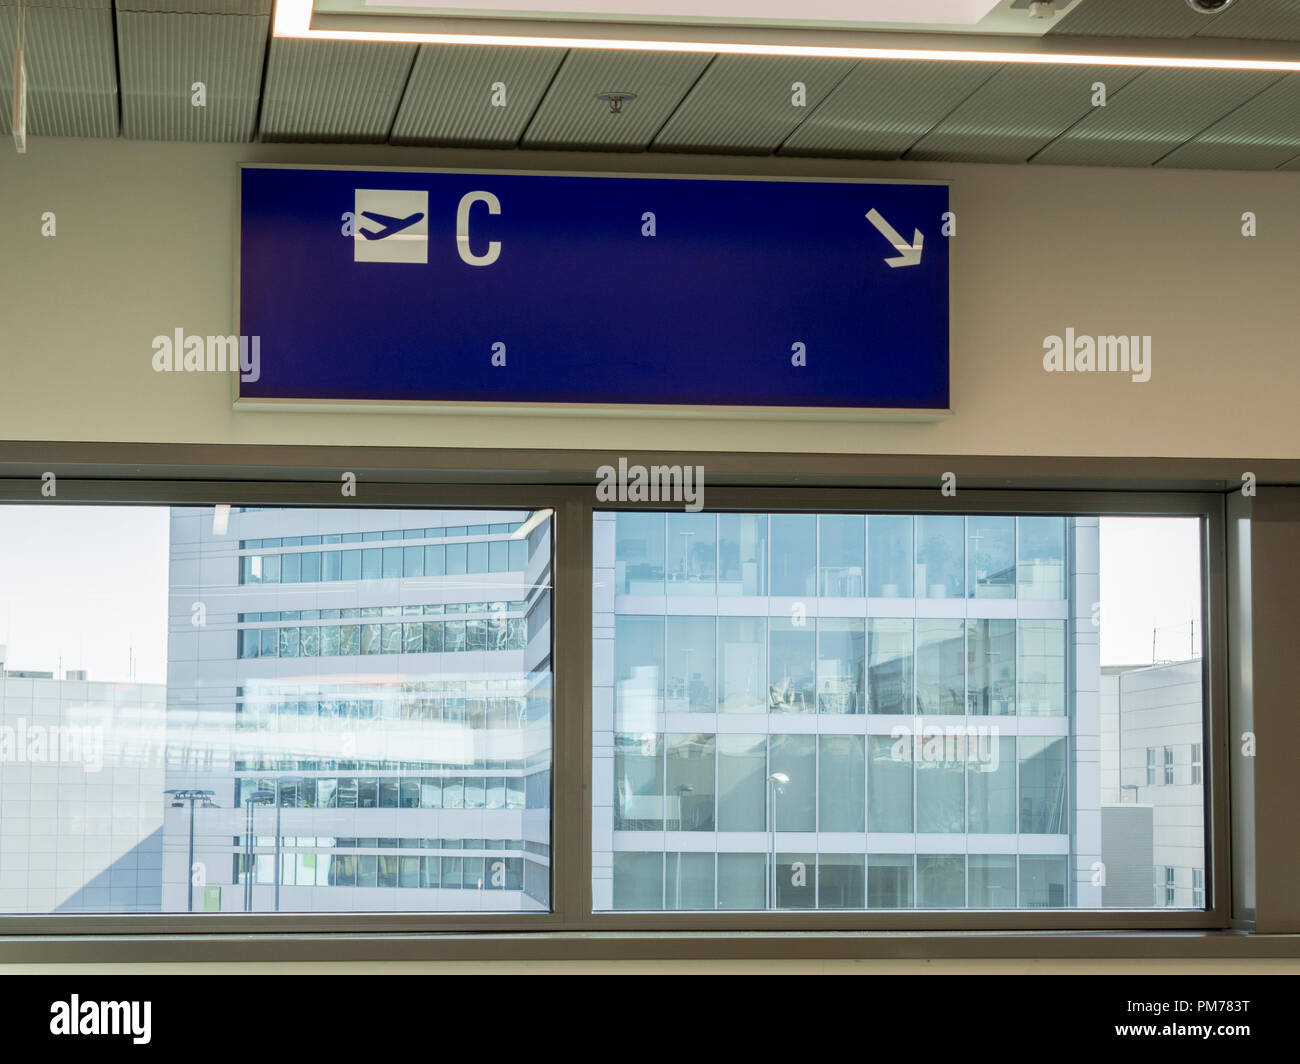 El aeropuerto de Frankfurt mostrando C Gates firmar y Terminal de abajo Foto de stock